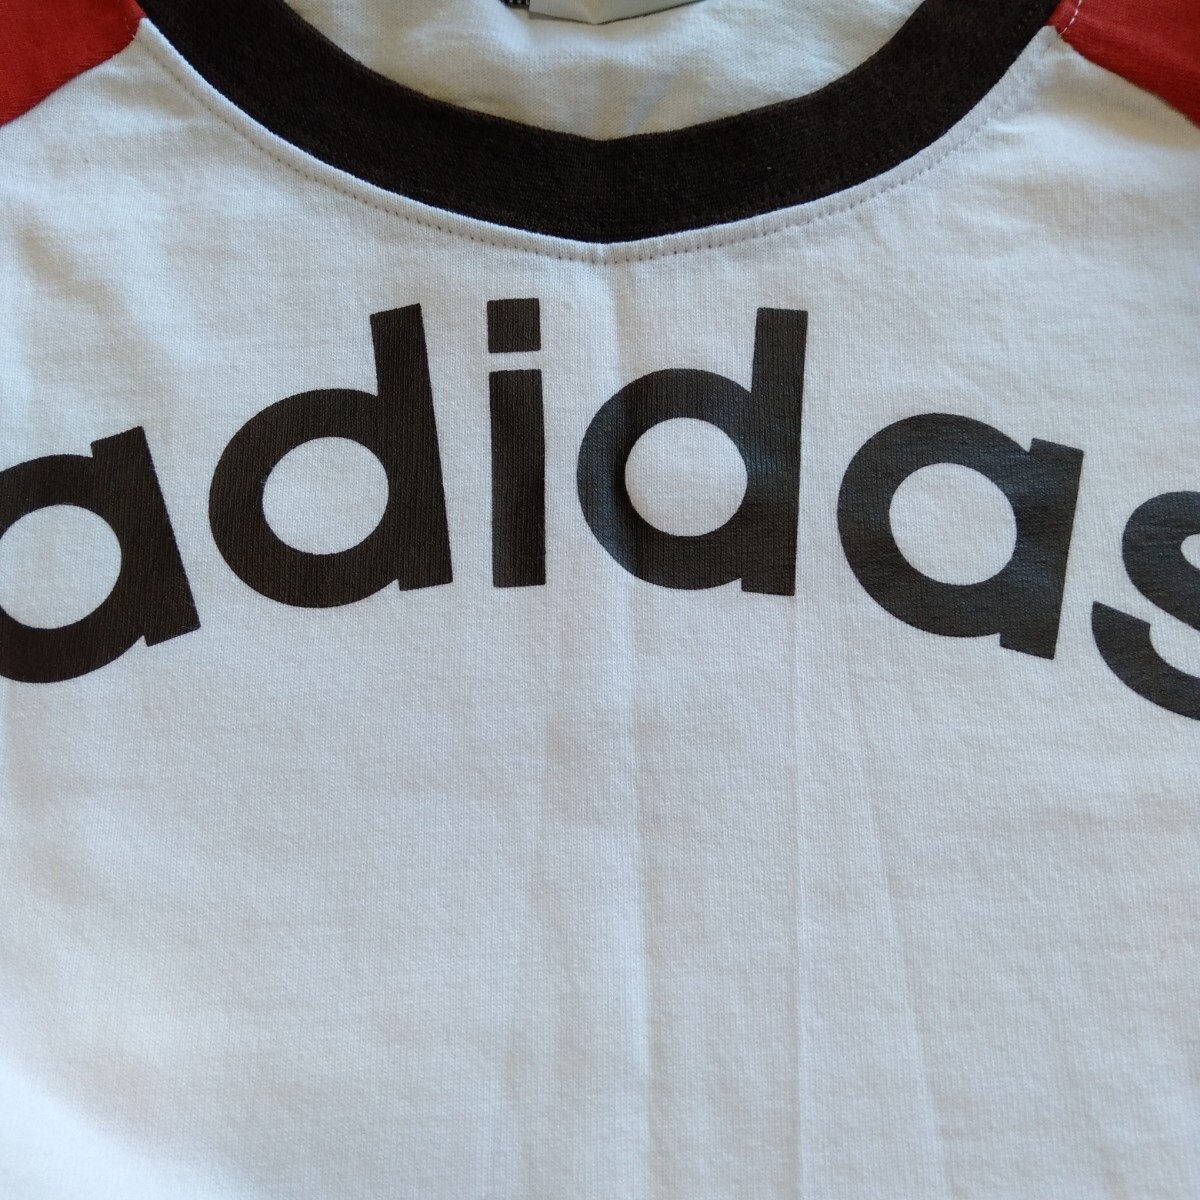 mu237 Adidas размер S хлопок длинный рукав la gran футболка Adidas белый × красный локти .. европейская одежда 